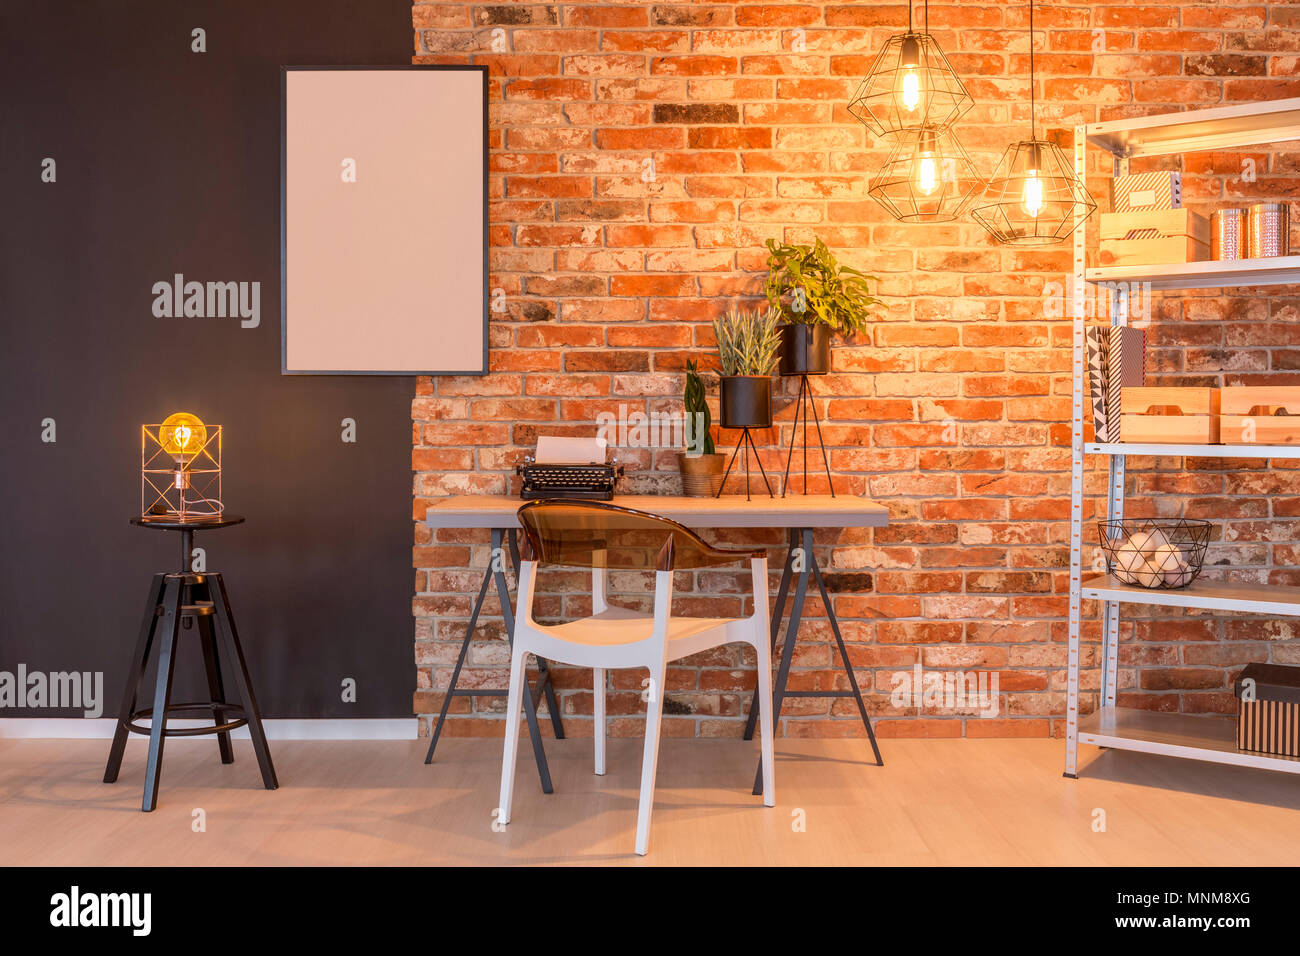 Loft avec mur de brique, bureau, chaise, lampe, tableau, les plantes Banque D'Images